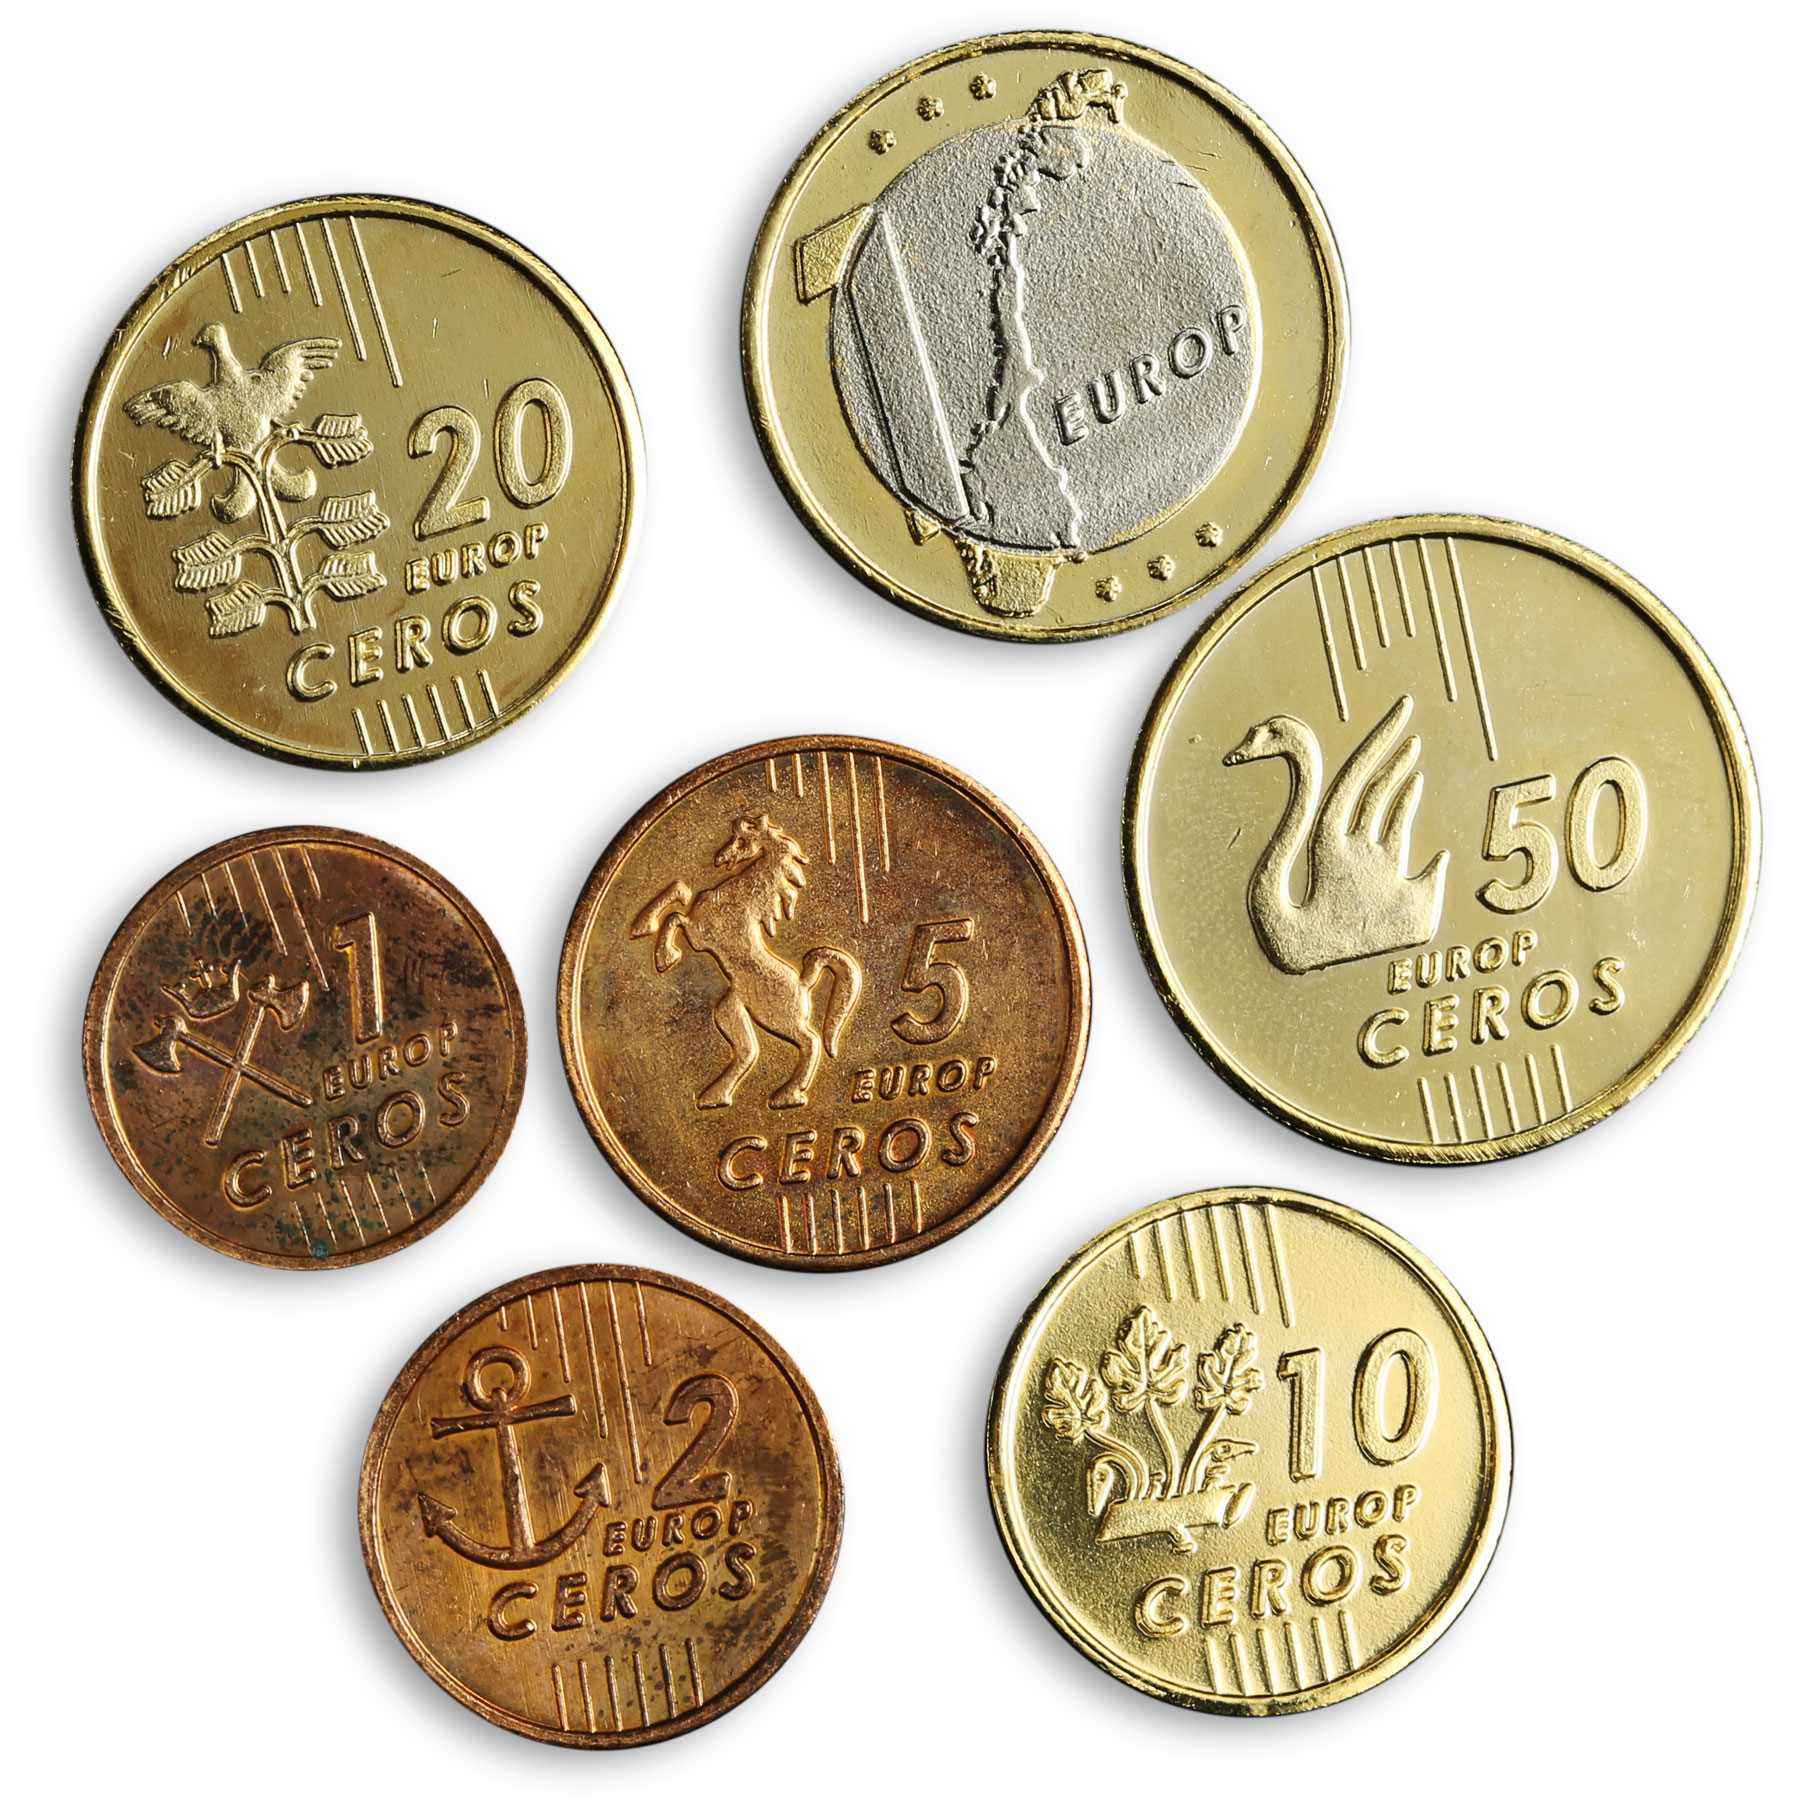 Norwegian Europ Ceros Set of 7 coins 2004